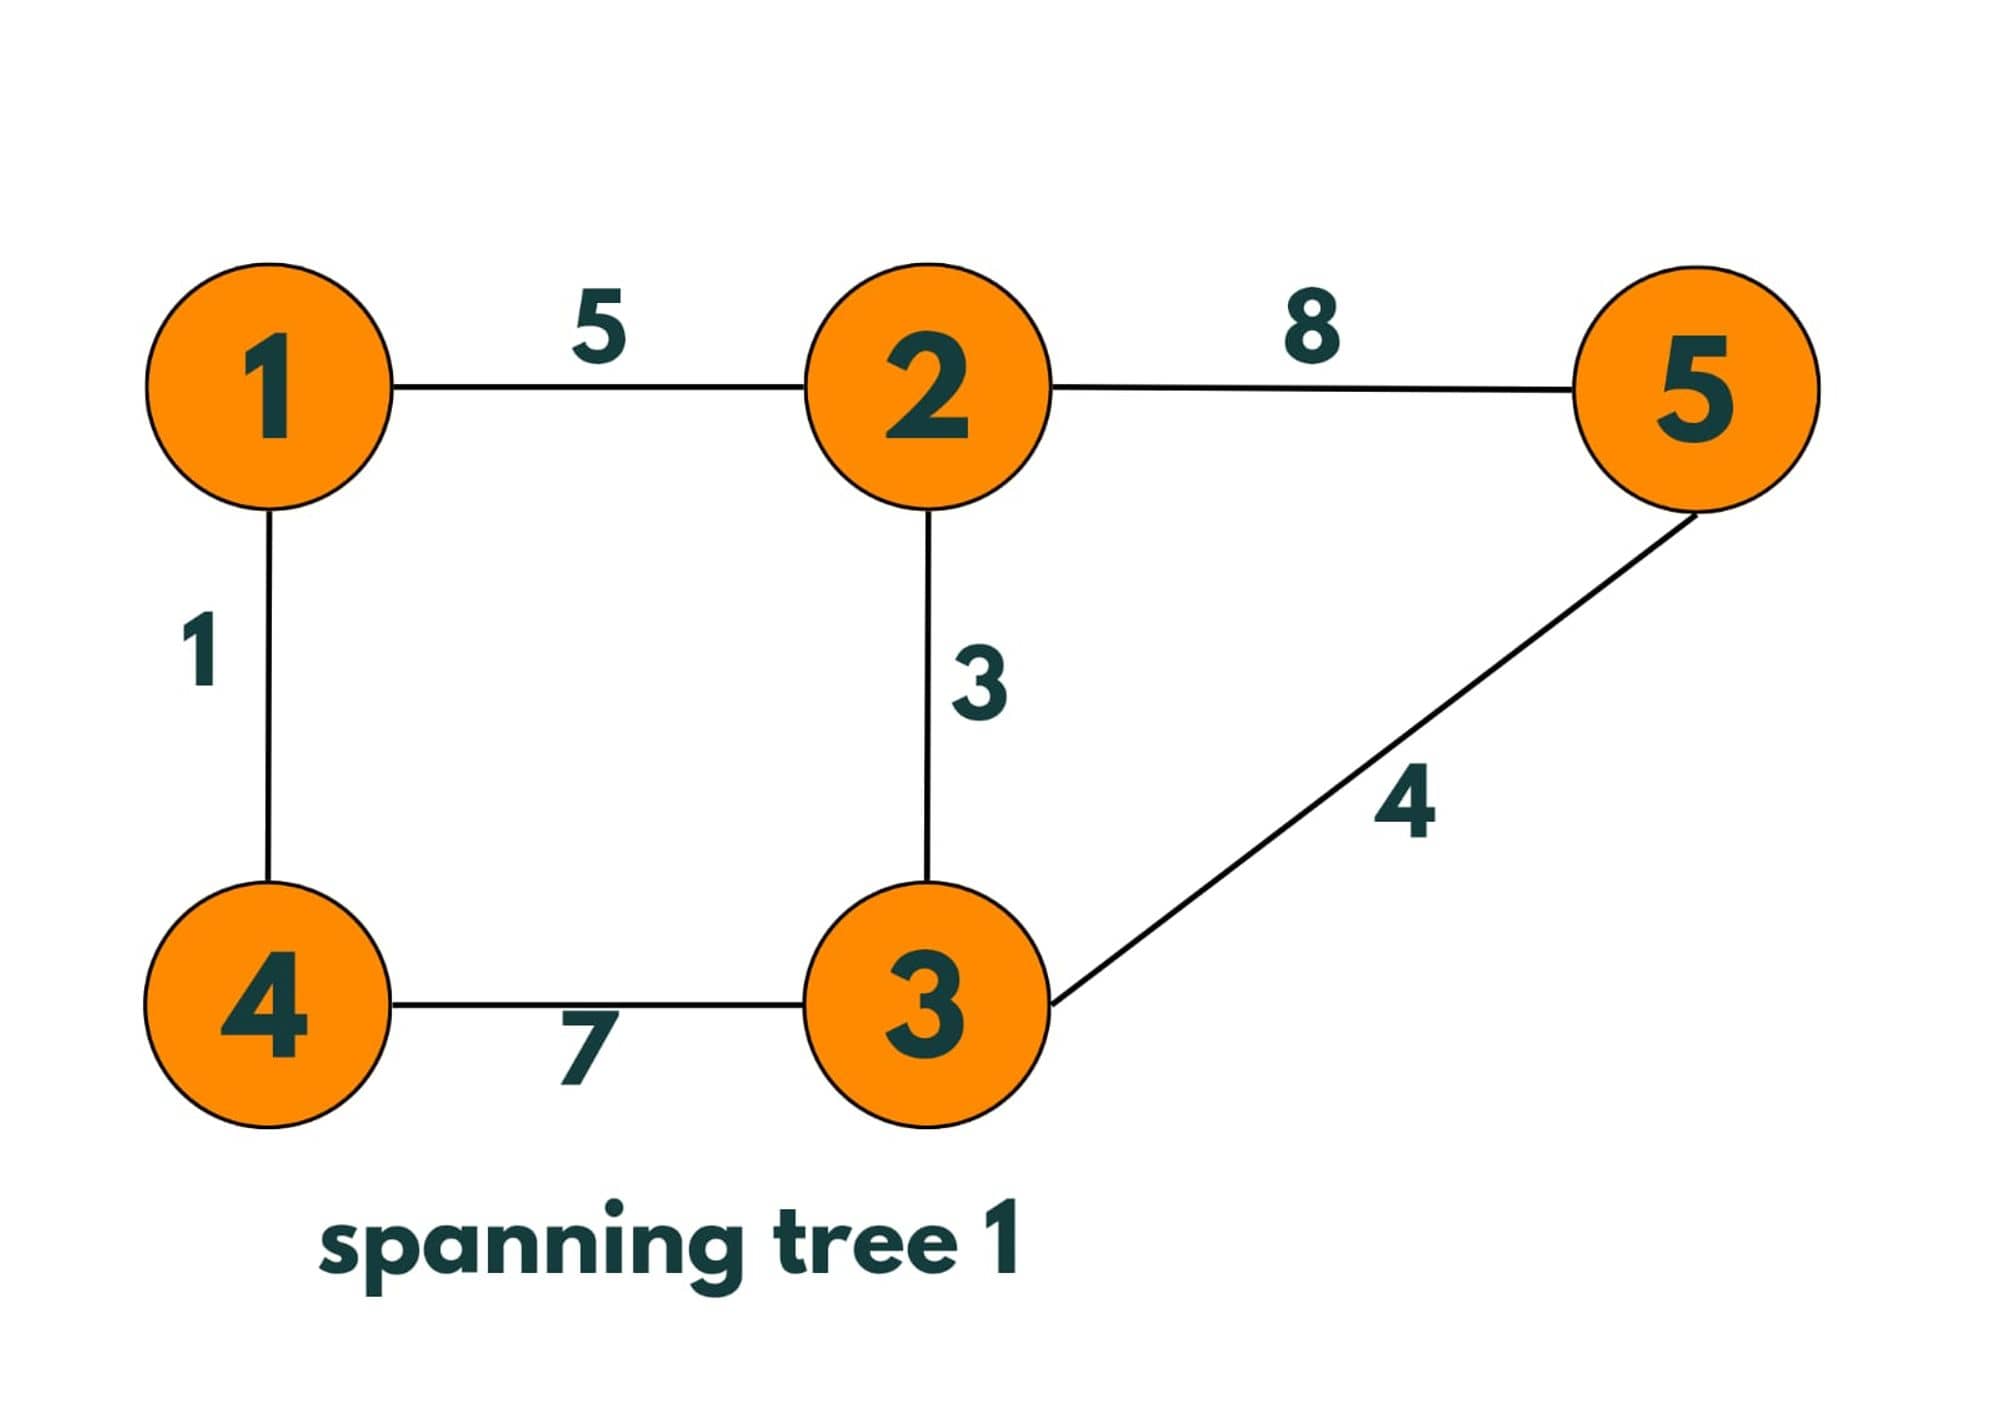 minium spanning tree 1